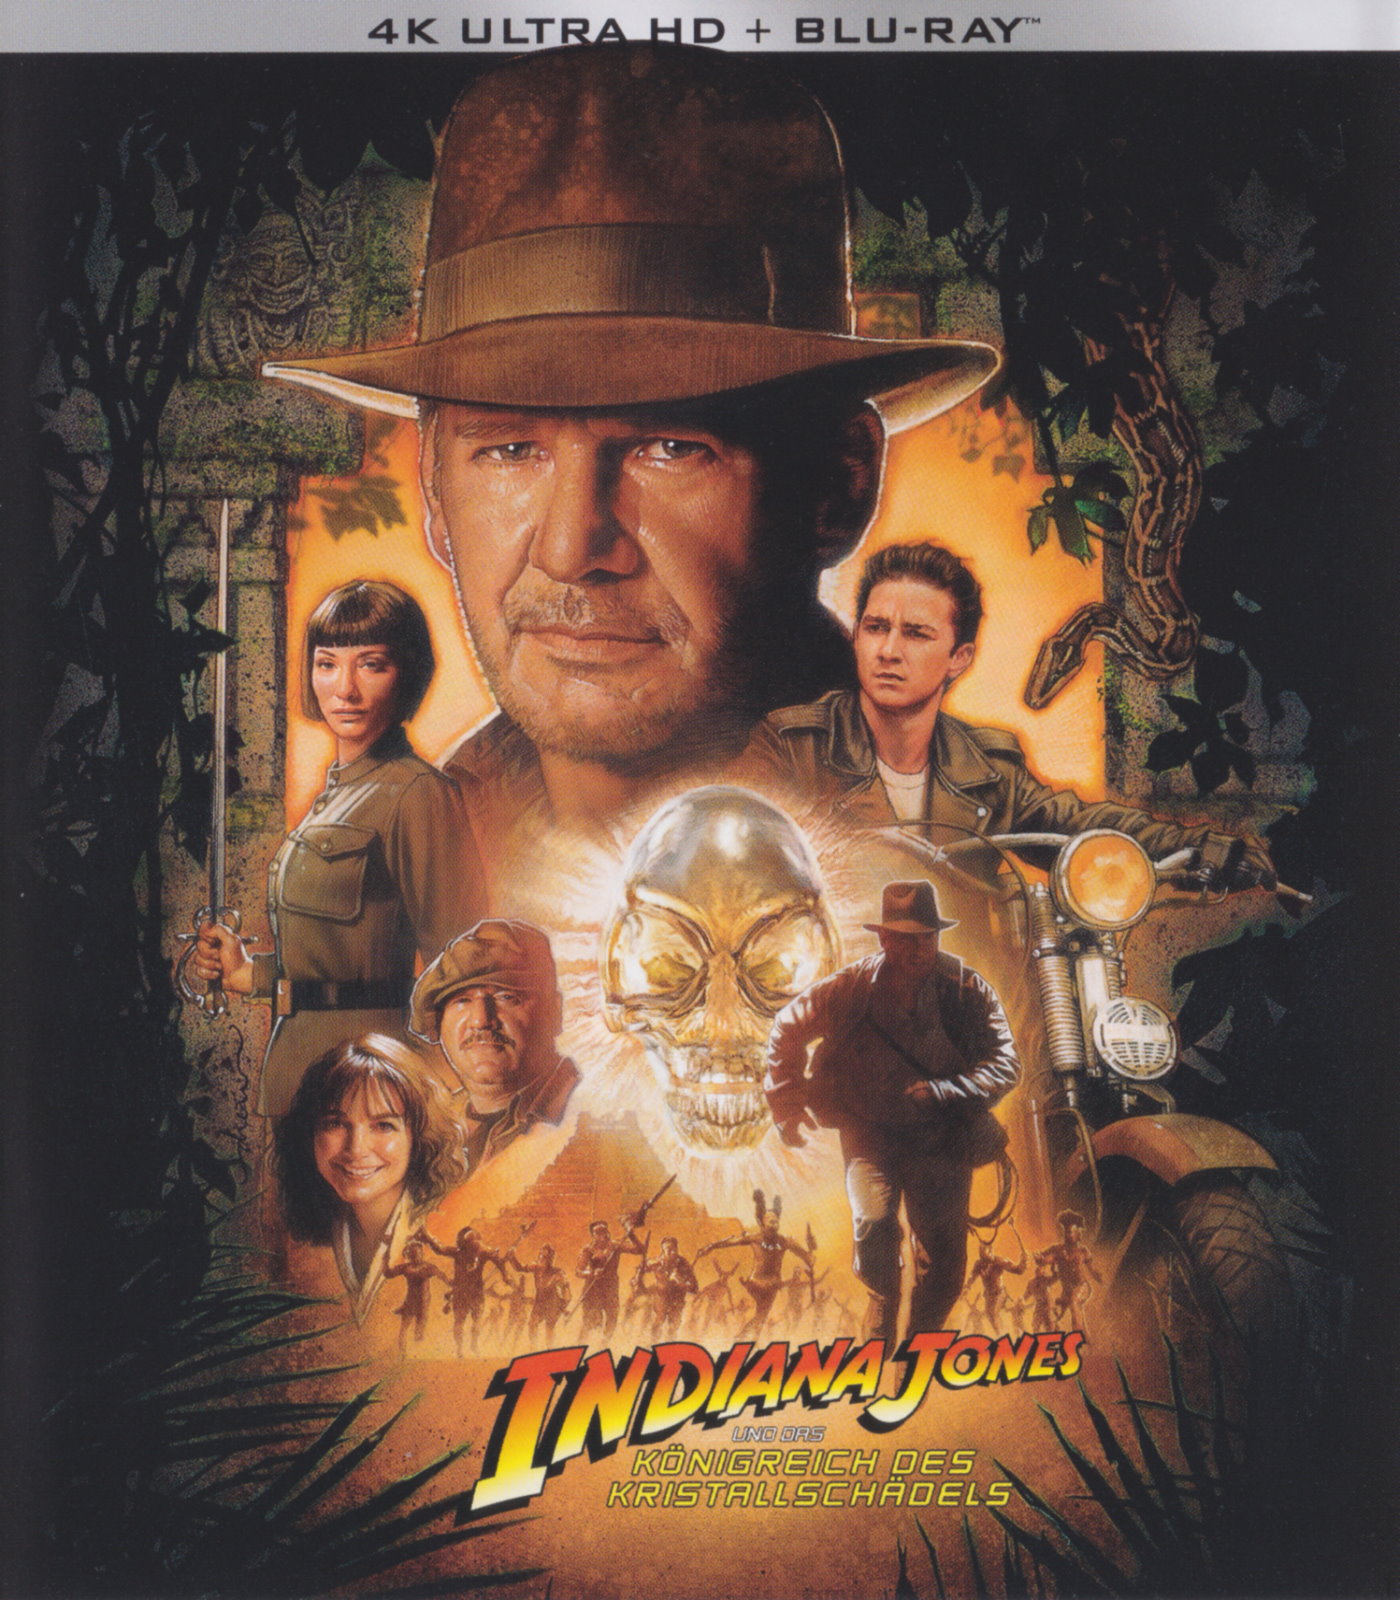 Cover - Indiana Jones und das Königreich des Kristallschädels.jpg